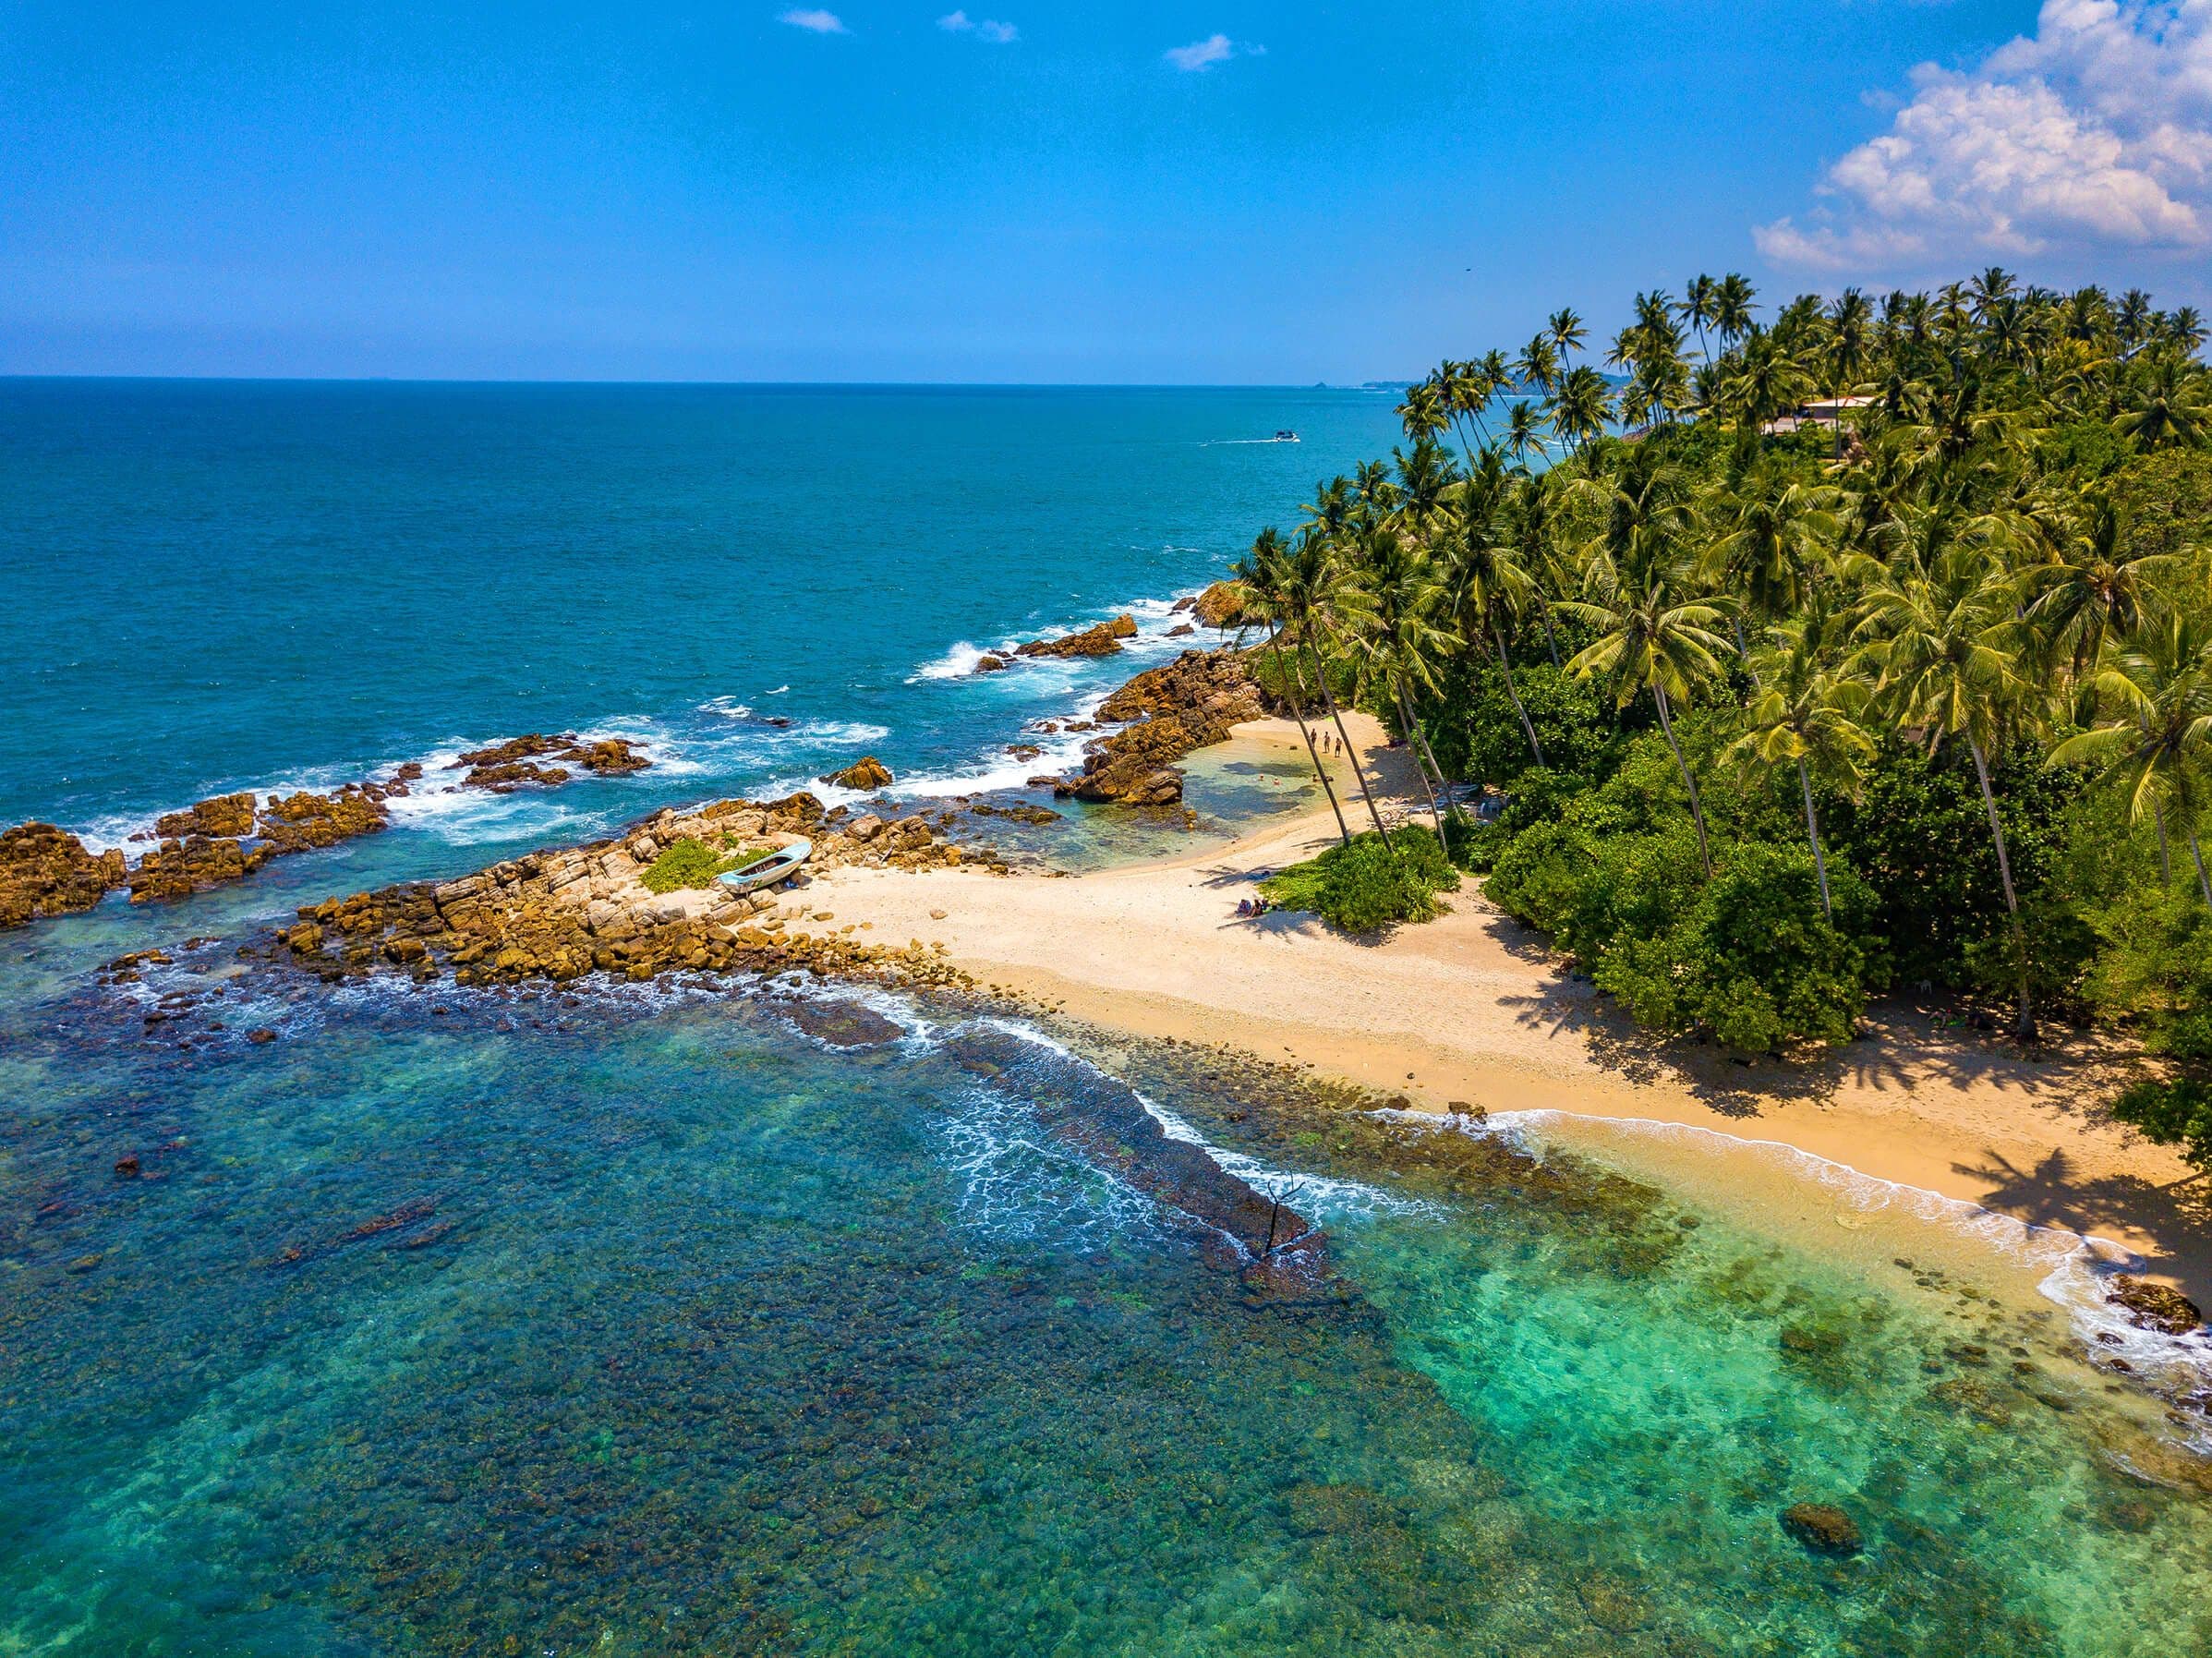 Aerial view of secret beach in tropical paradise Mirissa, Sri Lanka.